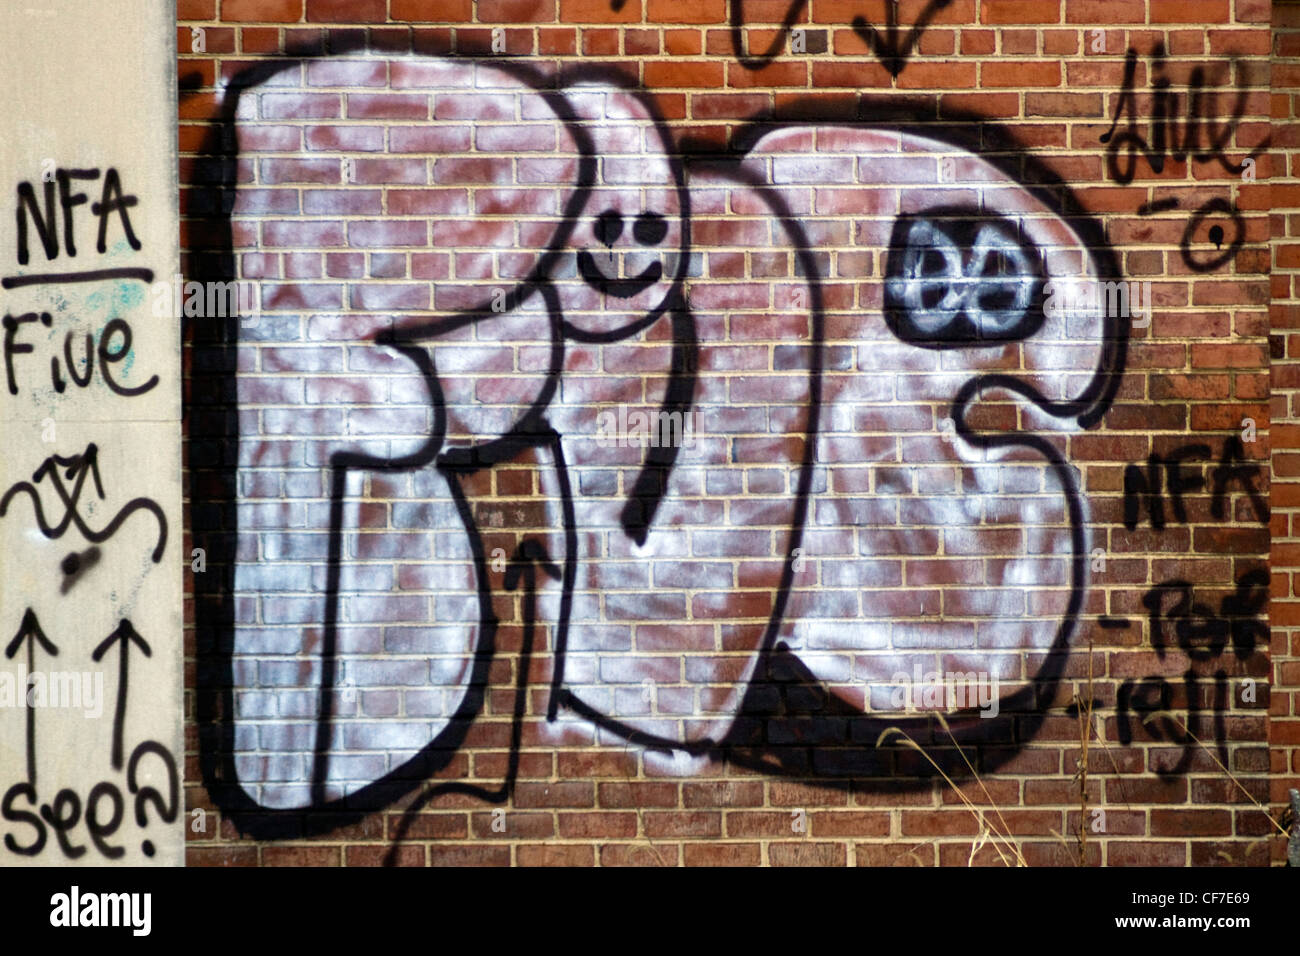 Spray graffiti peint sur un mur en brique dans un entrepôt Shirlington Arlington County zone urbaine non constituées en société Banque D'Images